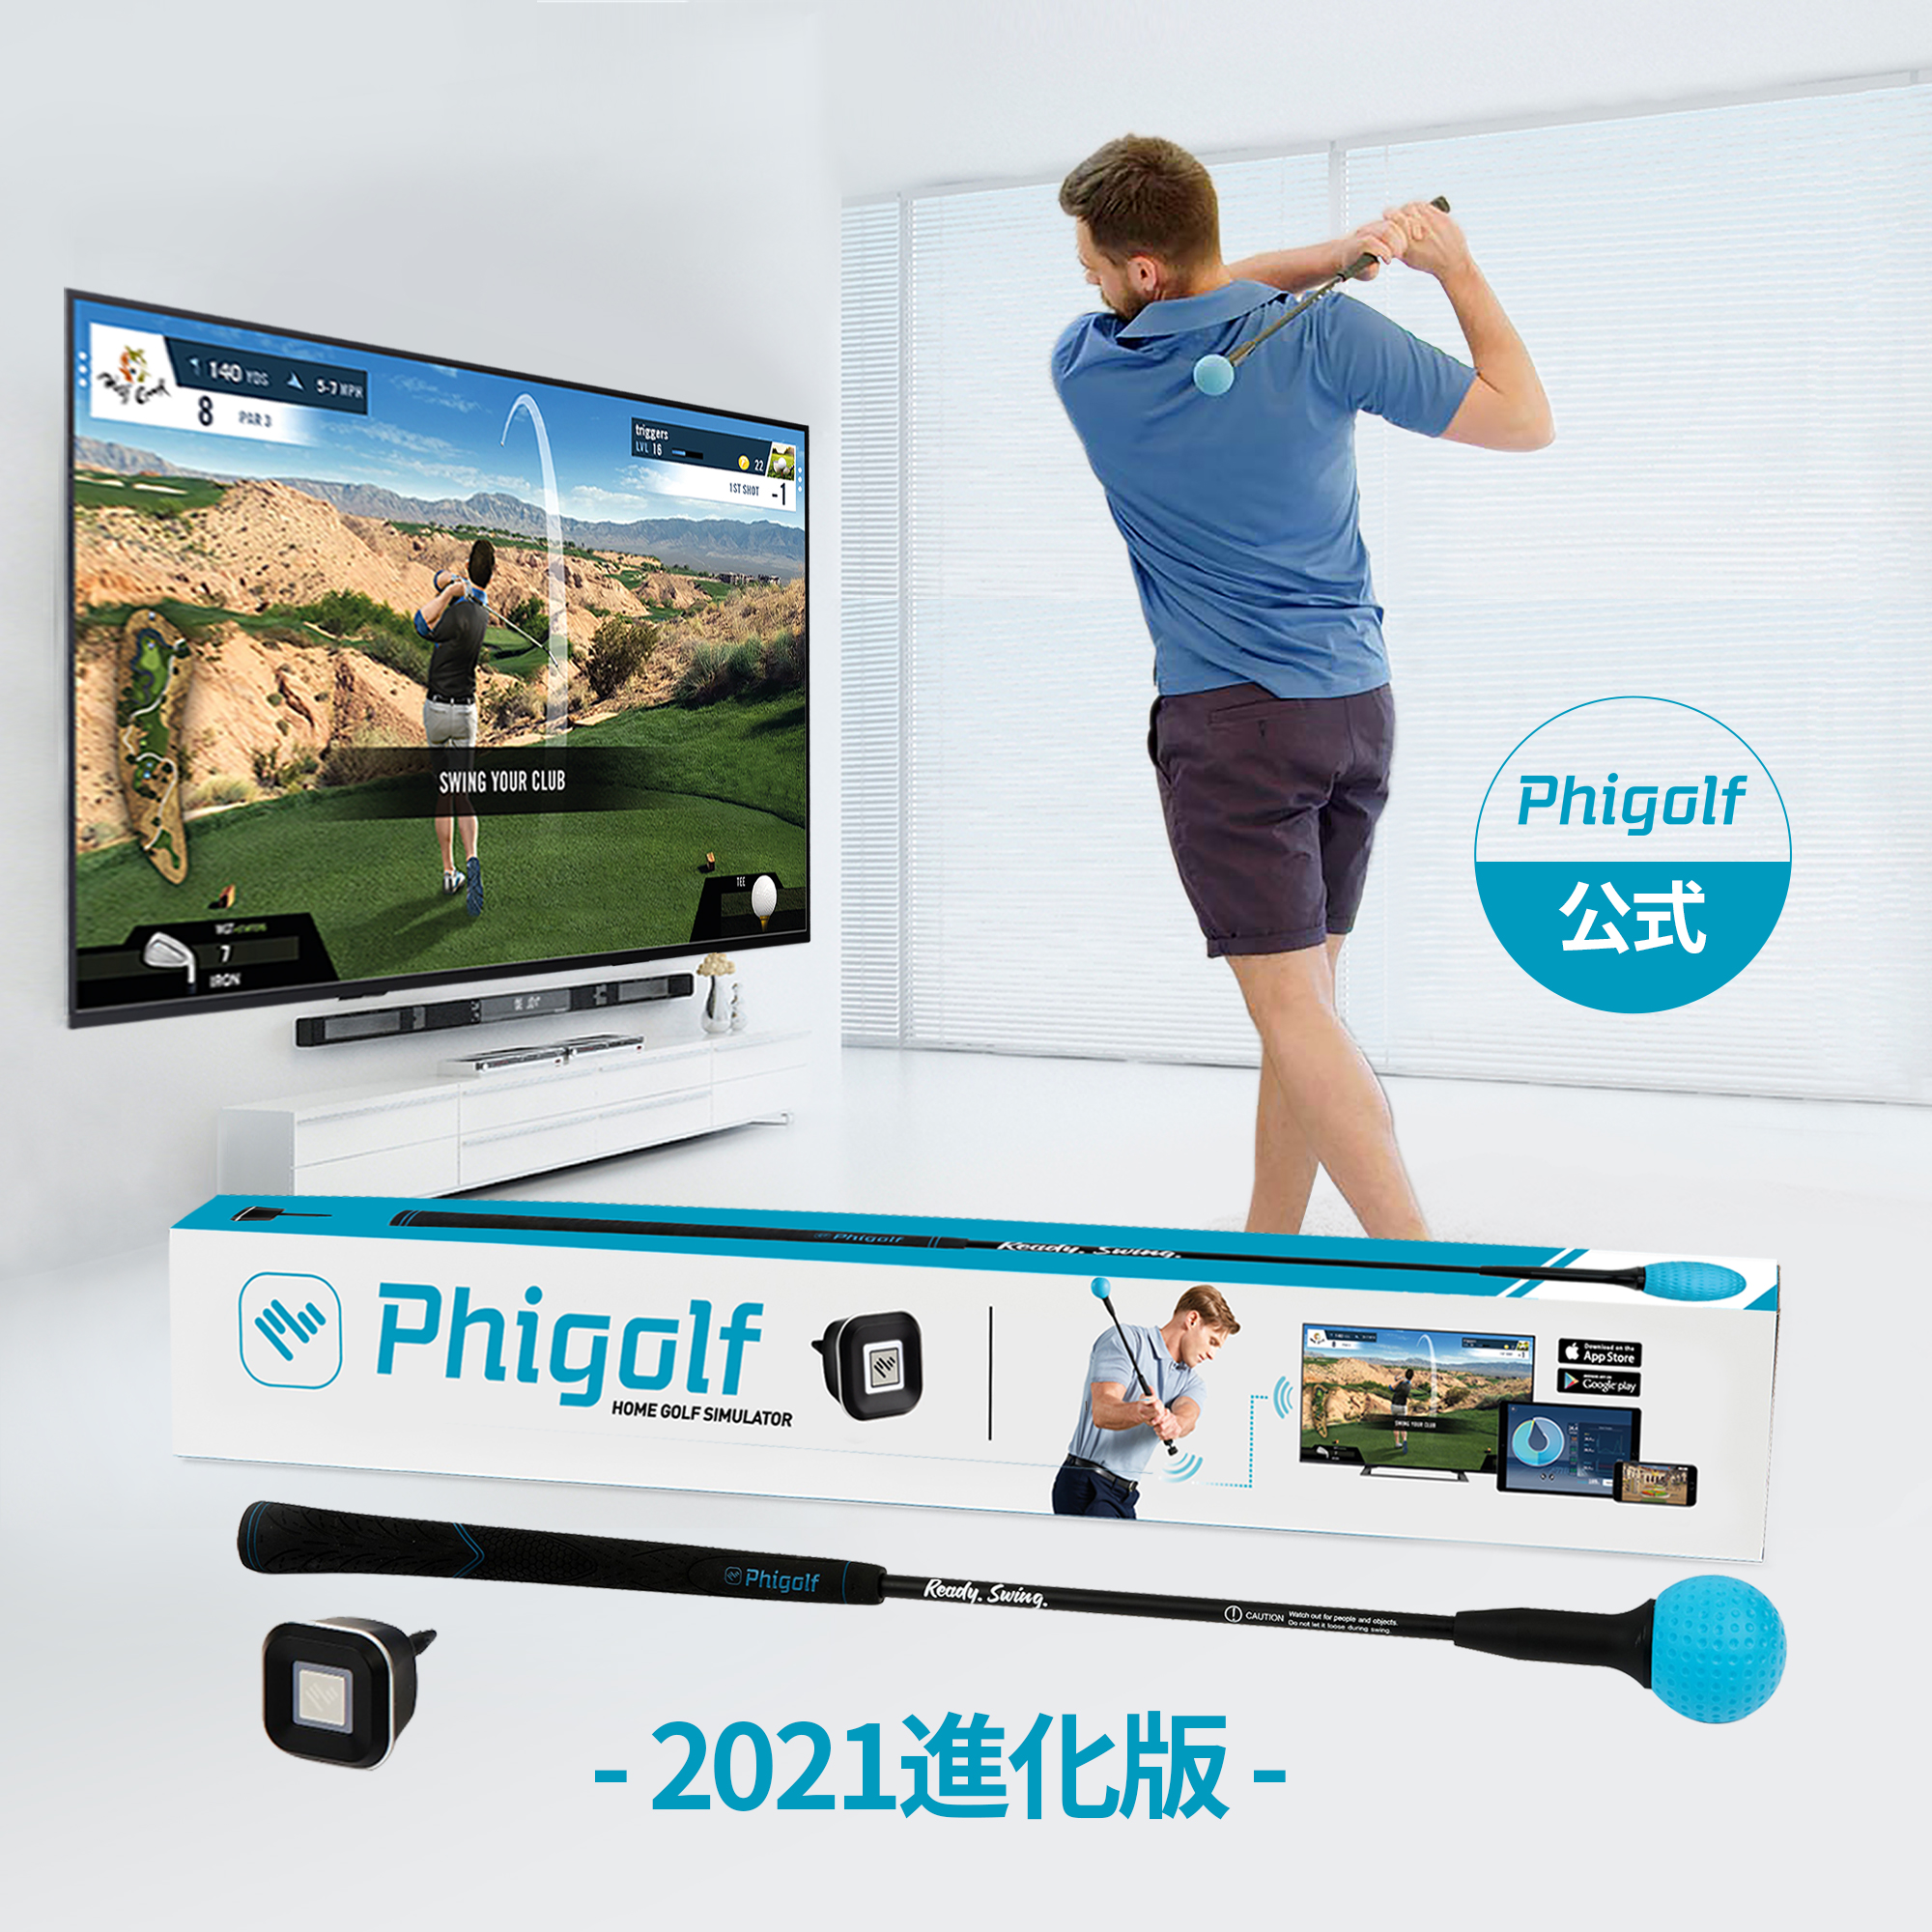 【30％割引】Phigolf (ファイゴルフ)【2021強化版】ゴルフシュミレーター ゴルフ練習器具 シミュレーター  ヘッドスピード/飛距離測定センサー内蔵【IOS/Android/SmartTV全対応/初心者プロ/無料アプリ(Phigolf/WGT/E6  connect)/トレーナークラブ付き】